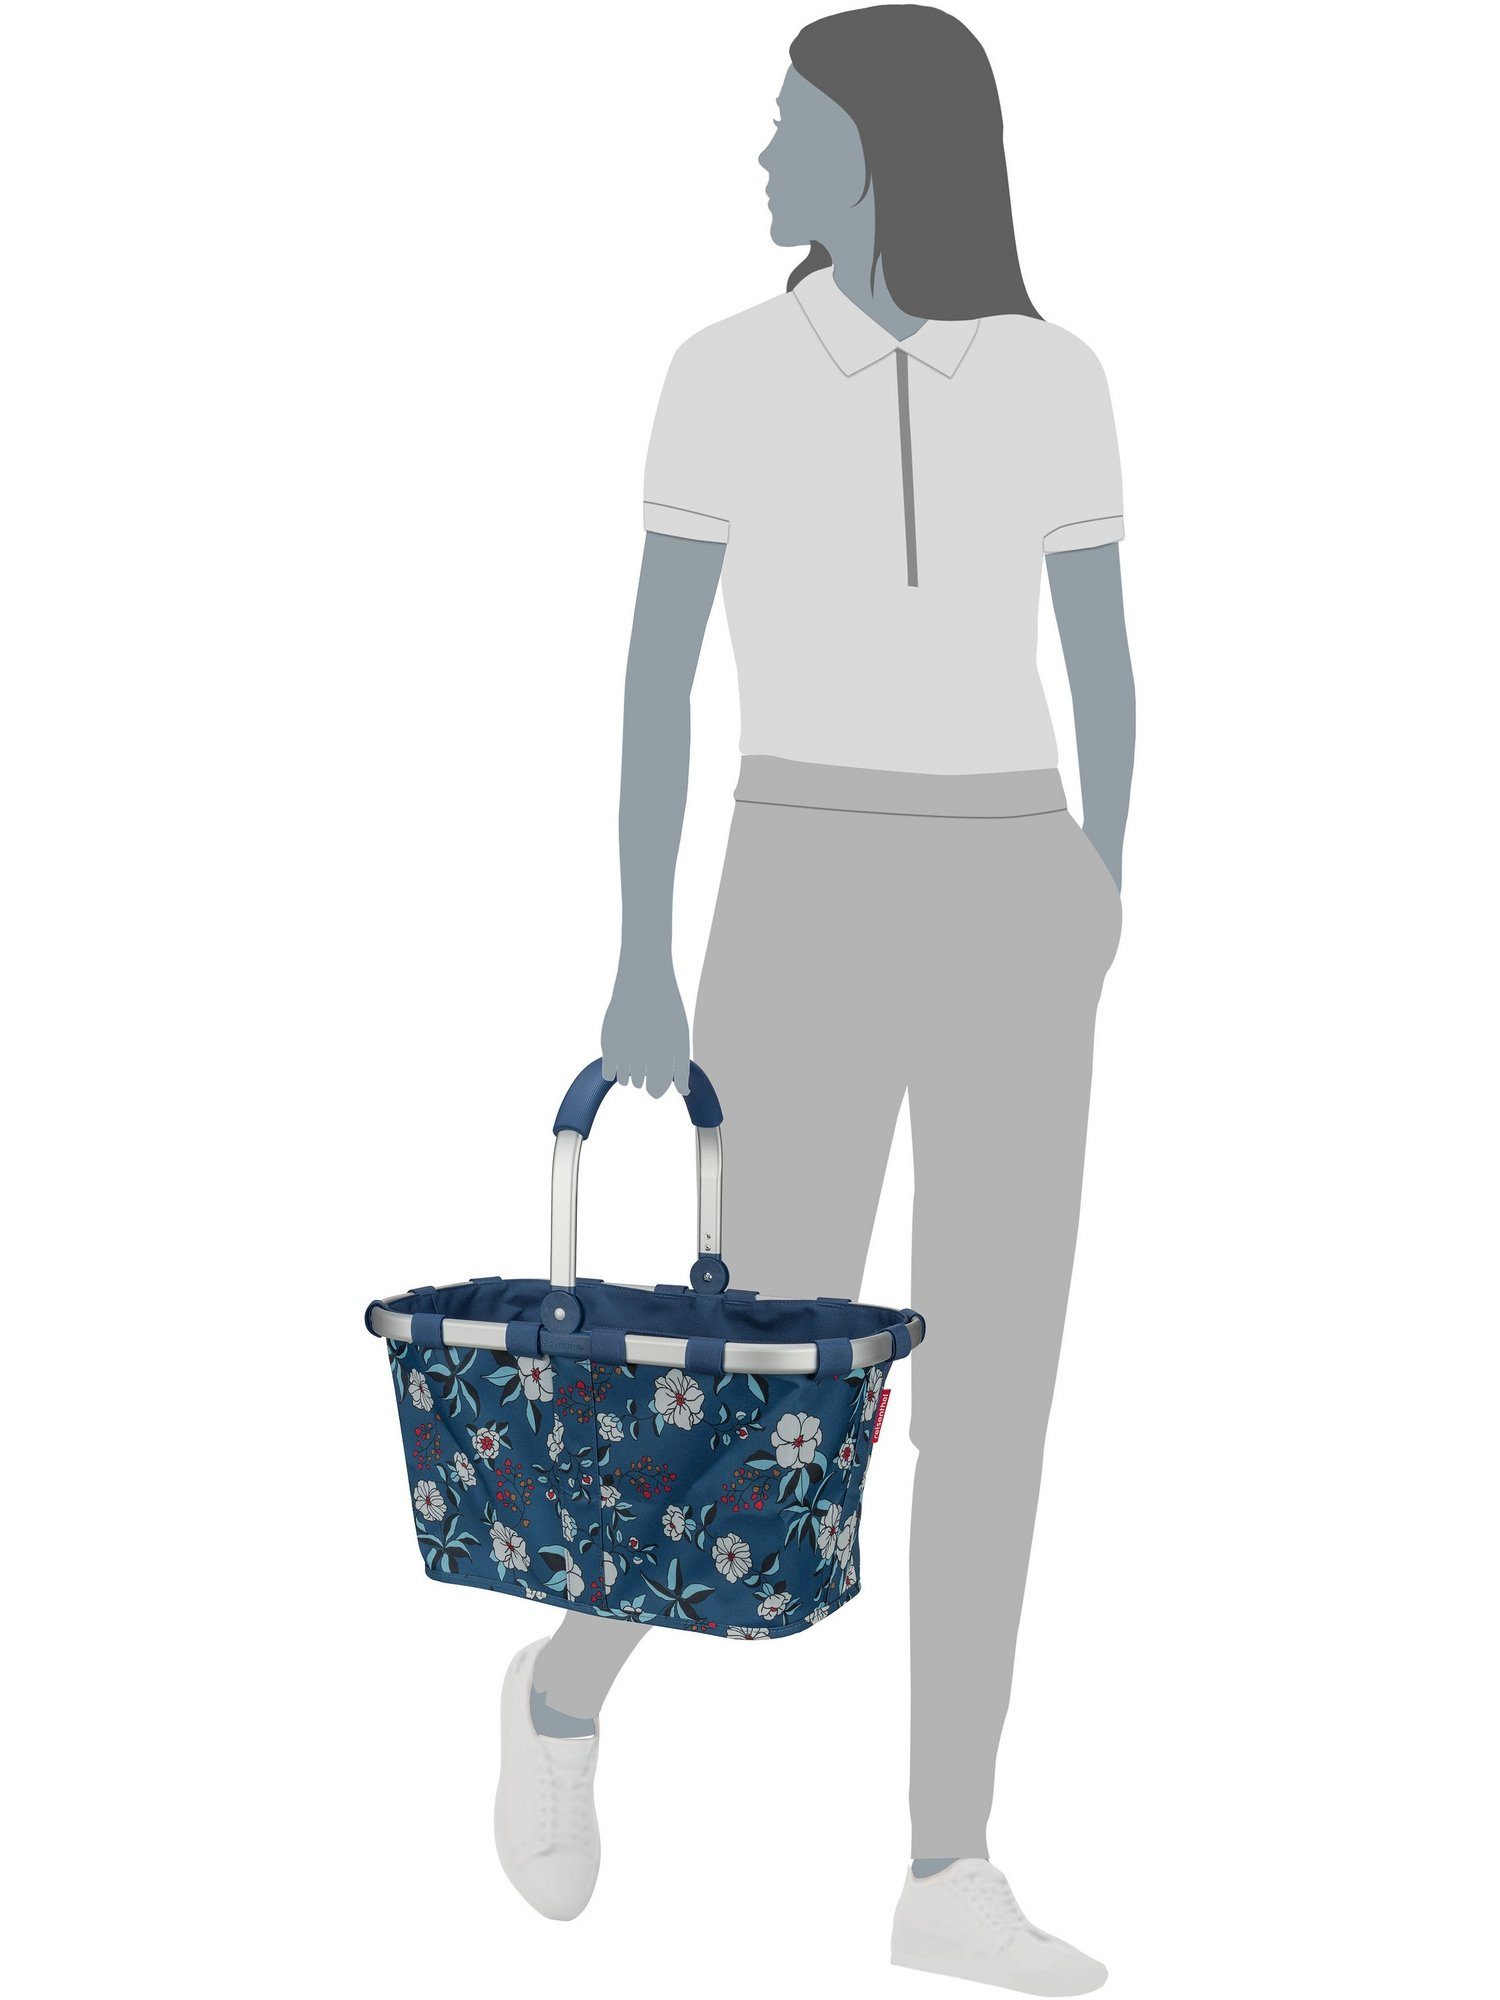 Einkaufsbeutel l carrybag, 22 Garden REISENTHEL® Blue